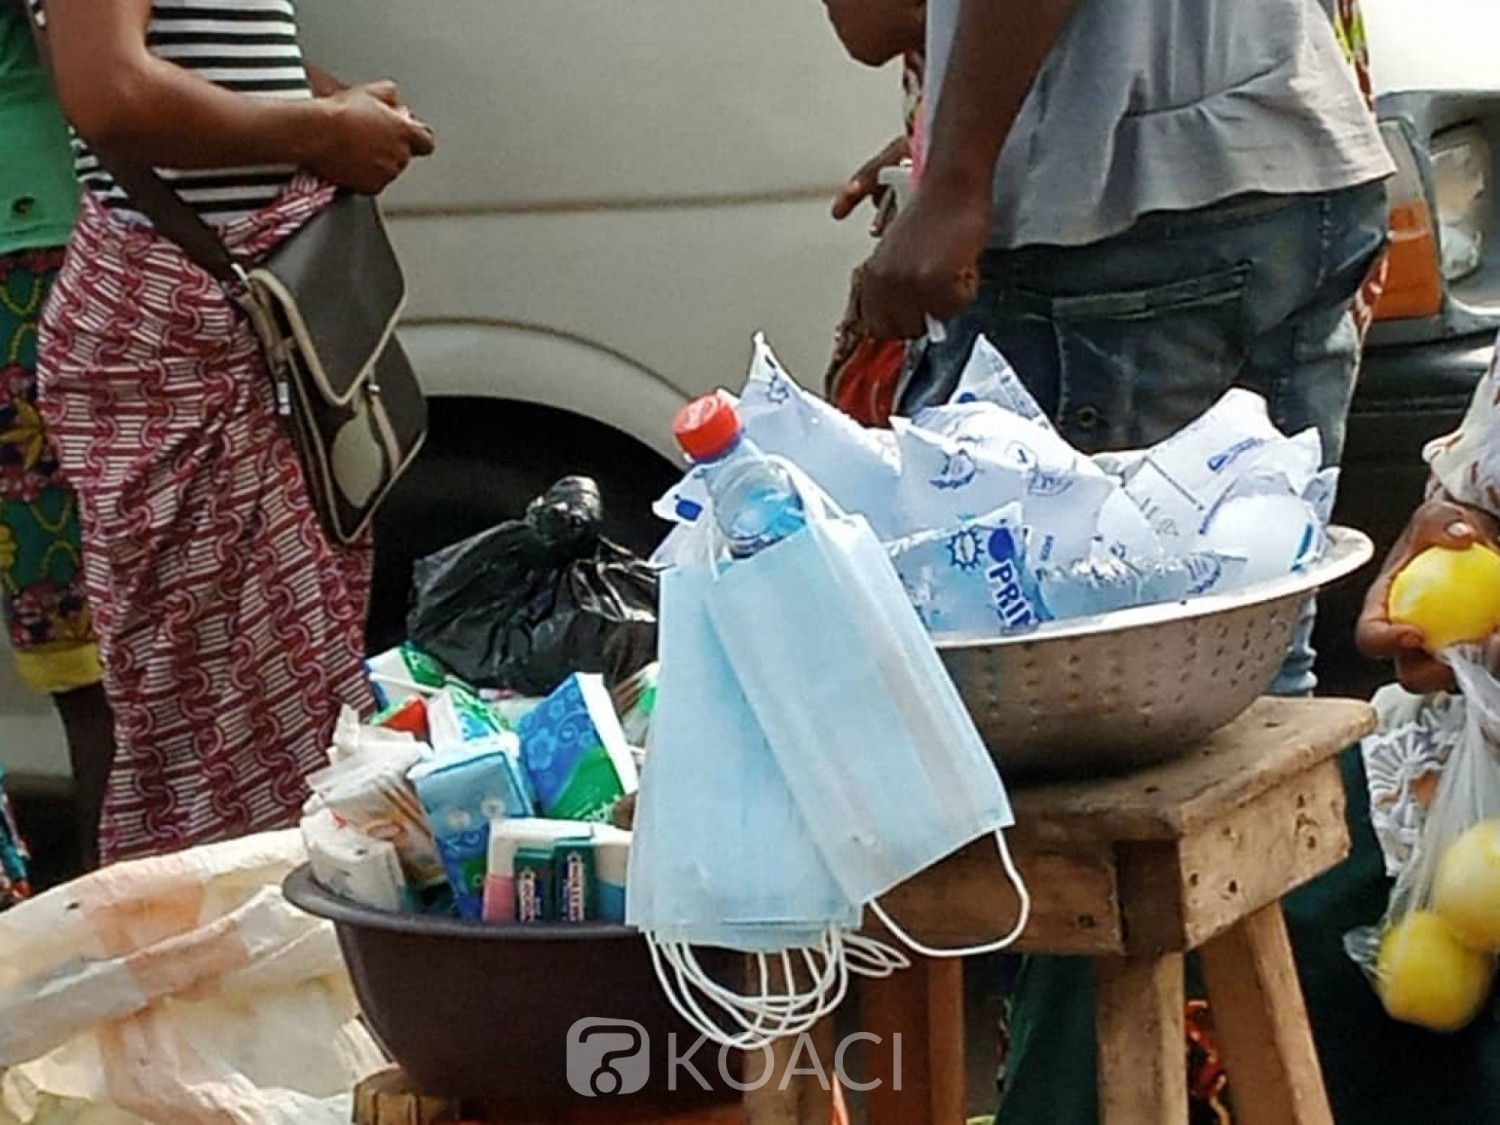 Côte d'Ivoire:  Abidjan couvert par l'harmattan, le «cahe-nez » vendu dans des conditions hygiéniques déplorables à tous coins de rues